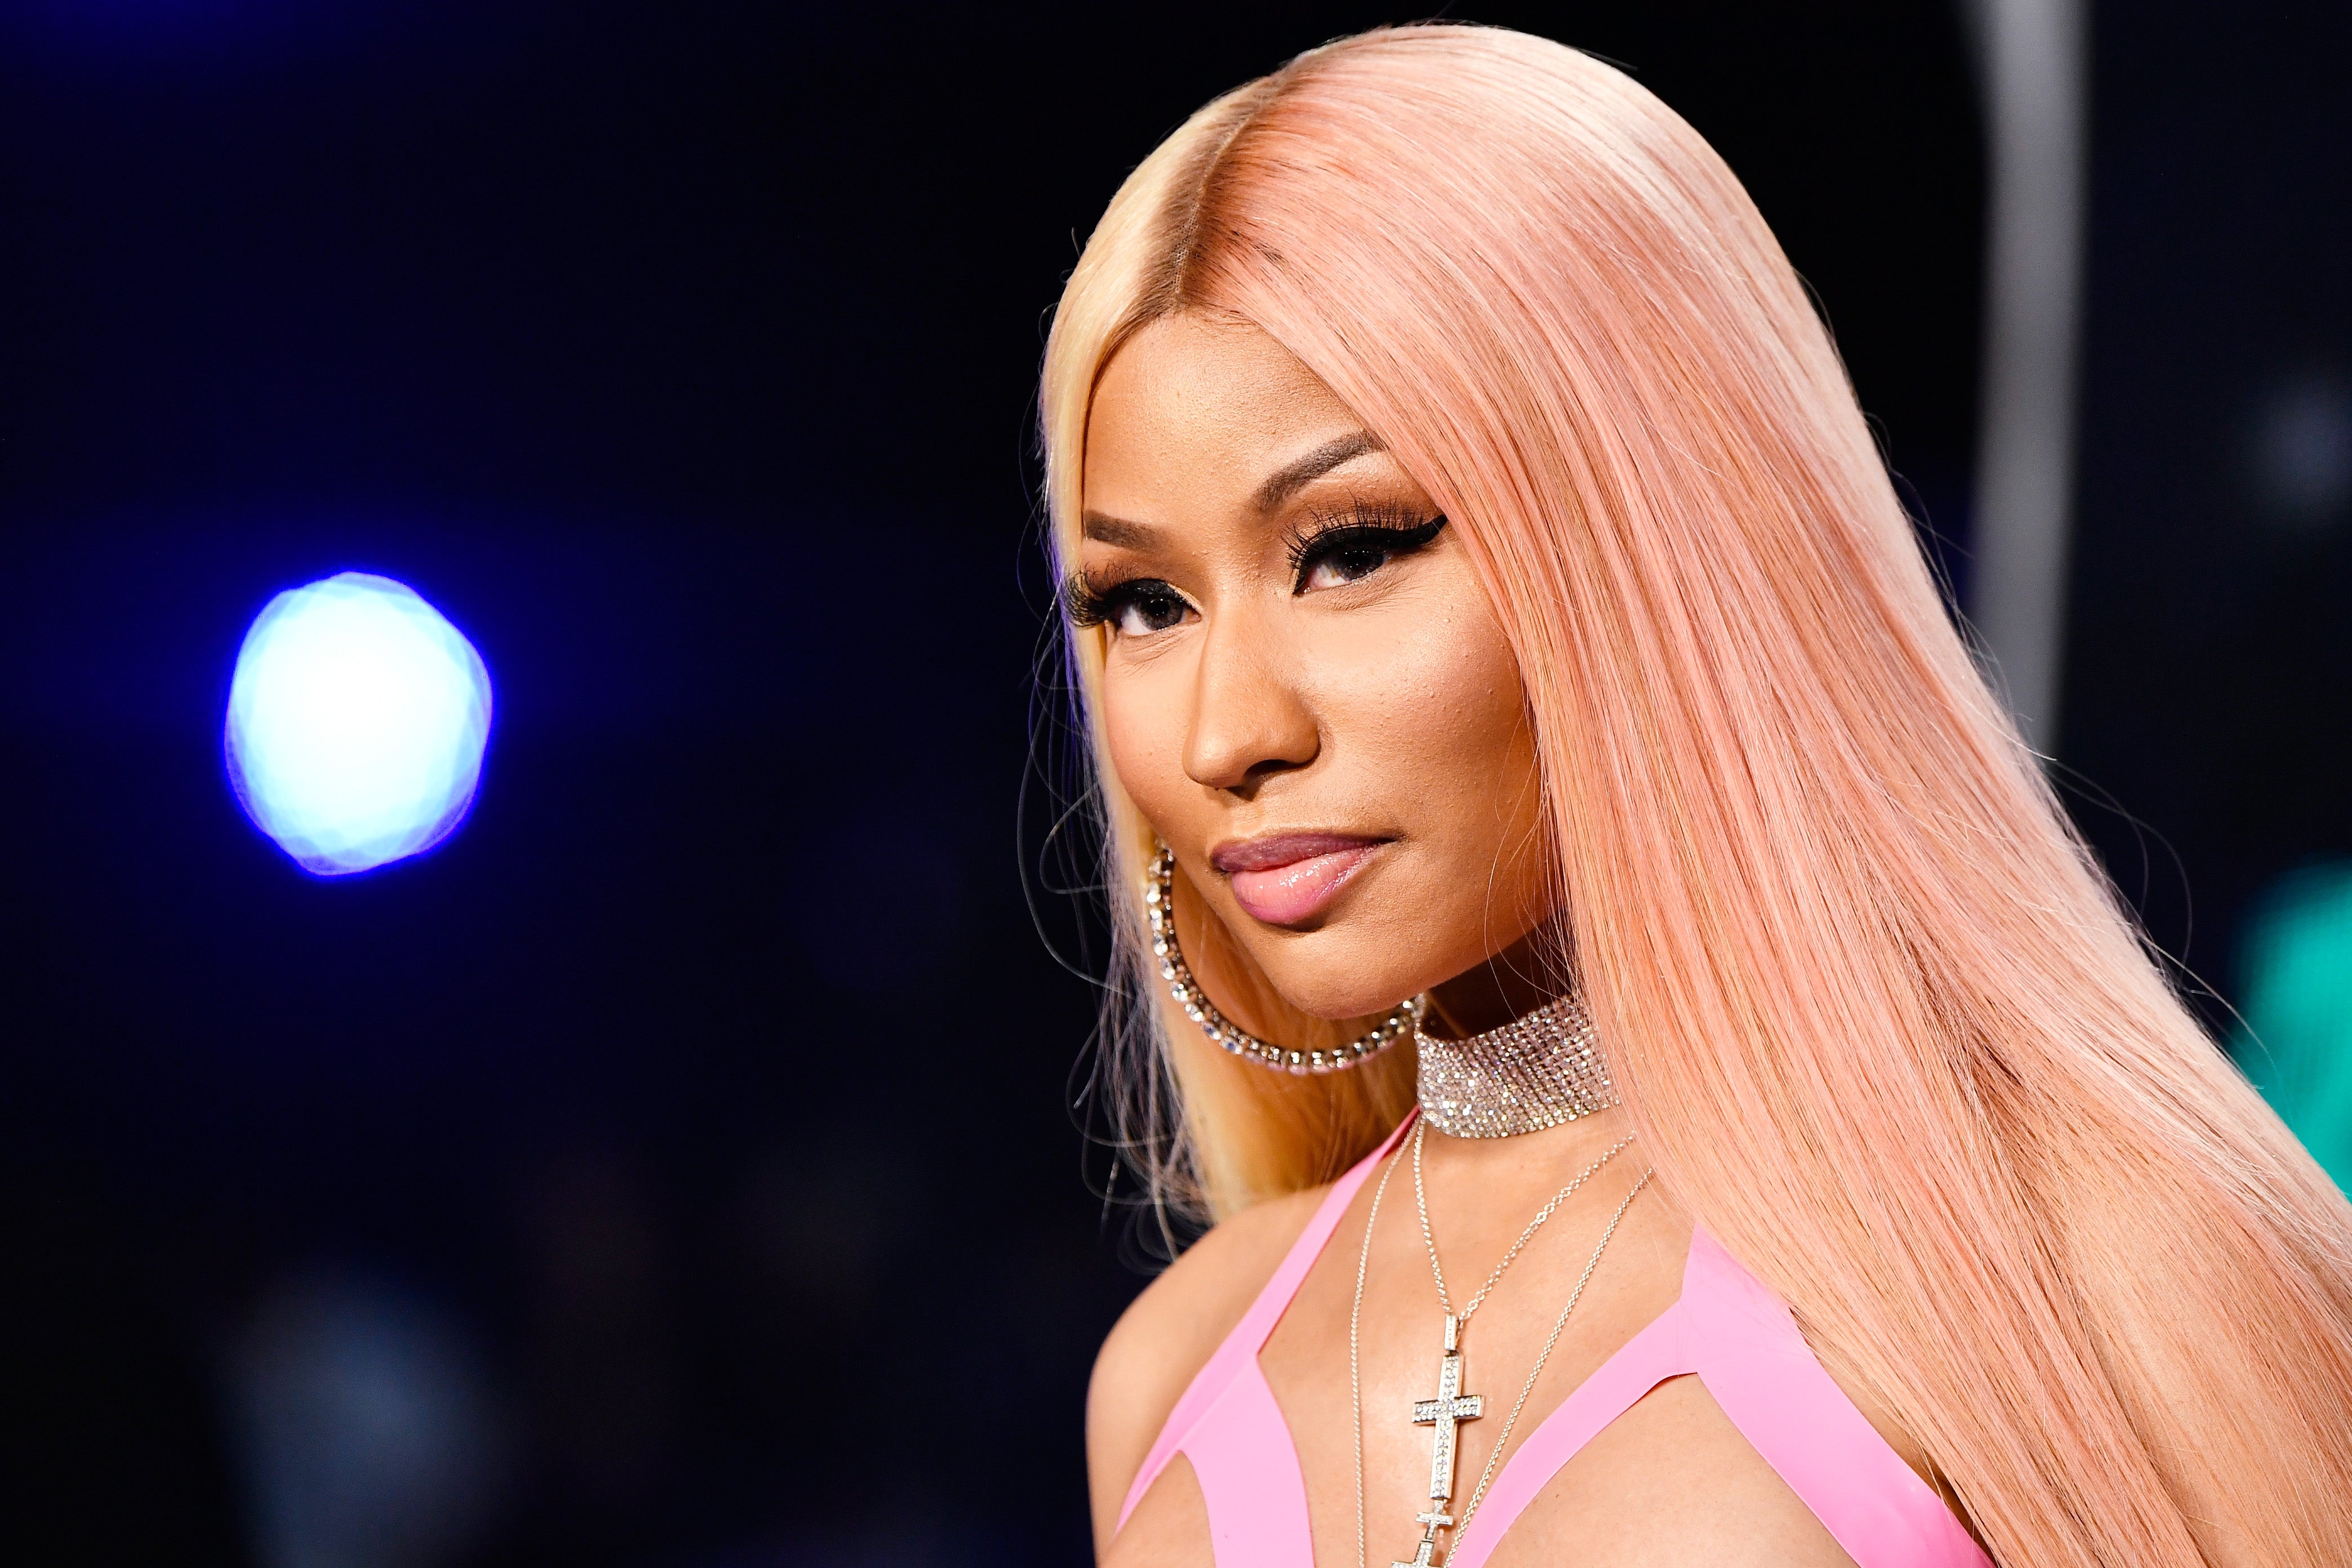 Nicki Minaj Warns Women About Toxic Relationship Signs